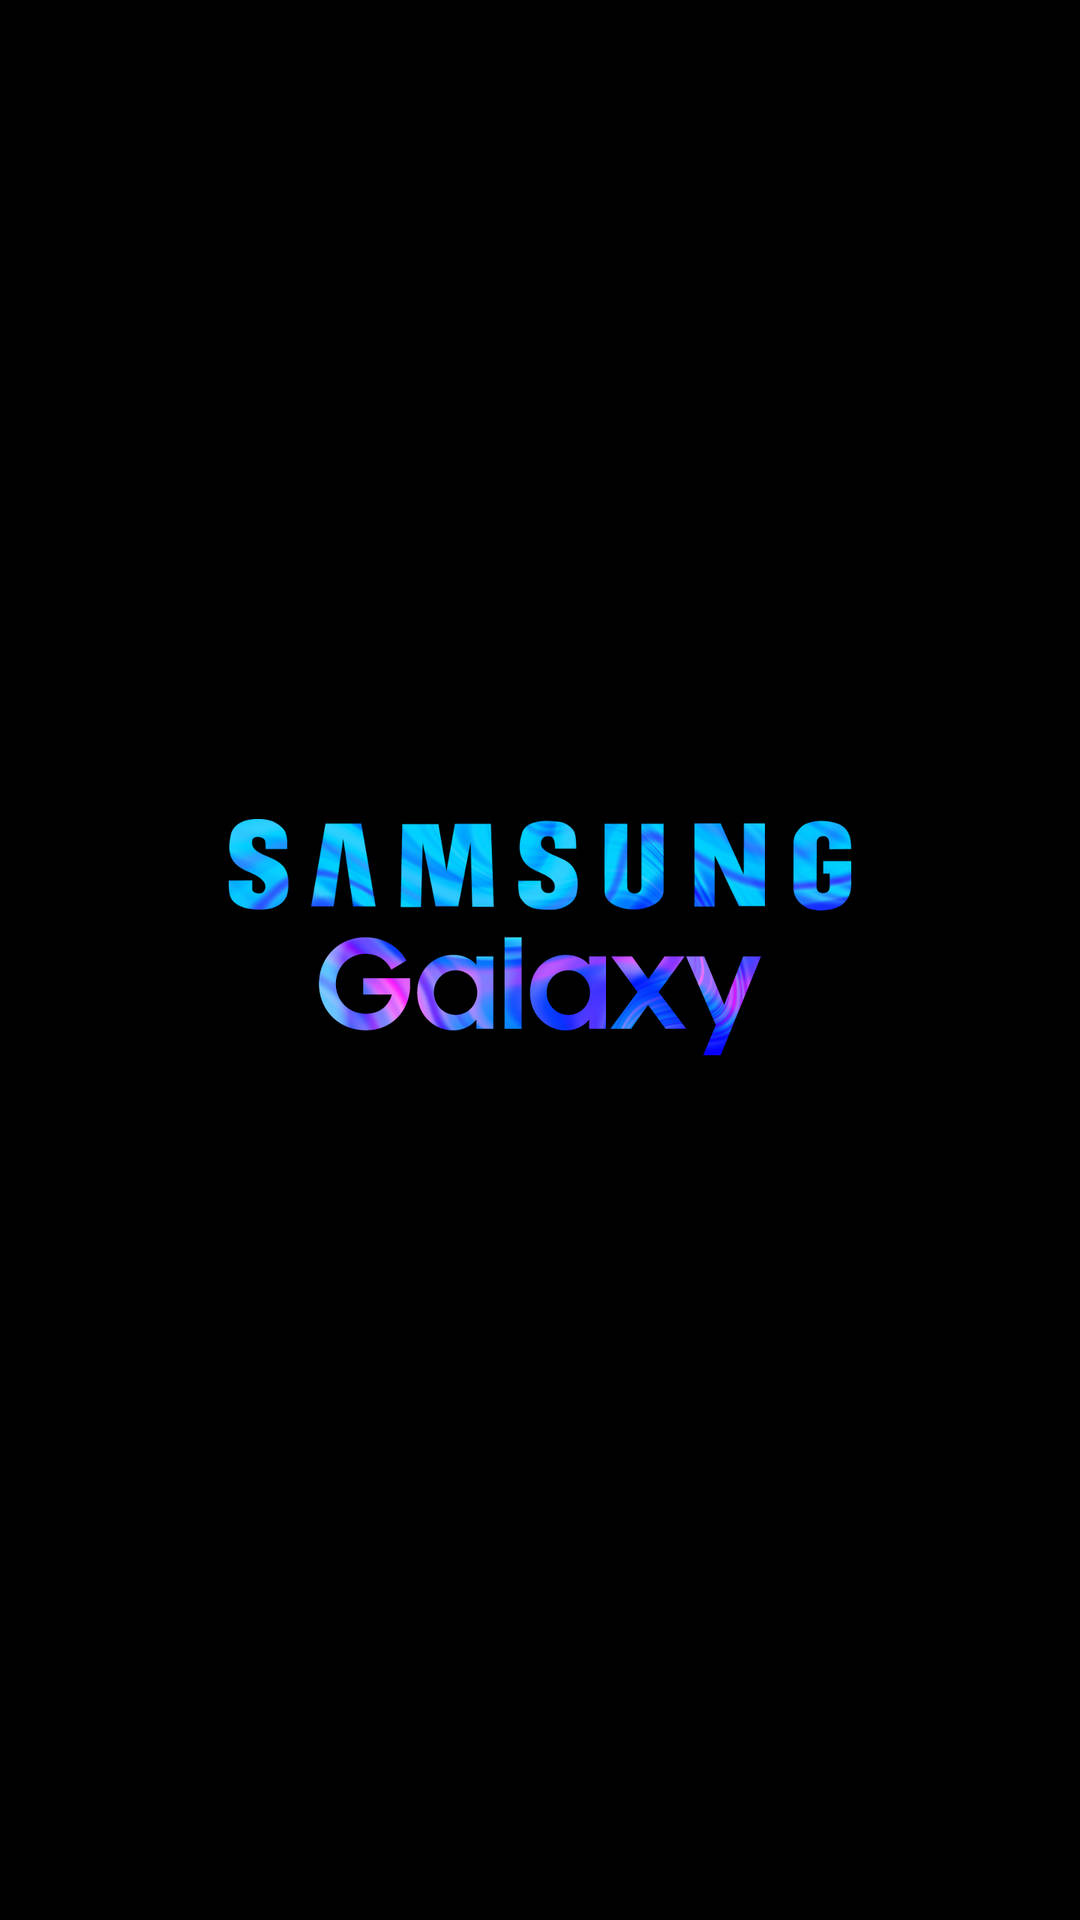 Samsung Mobile Galaxy Logo